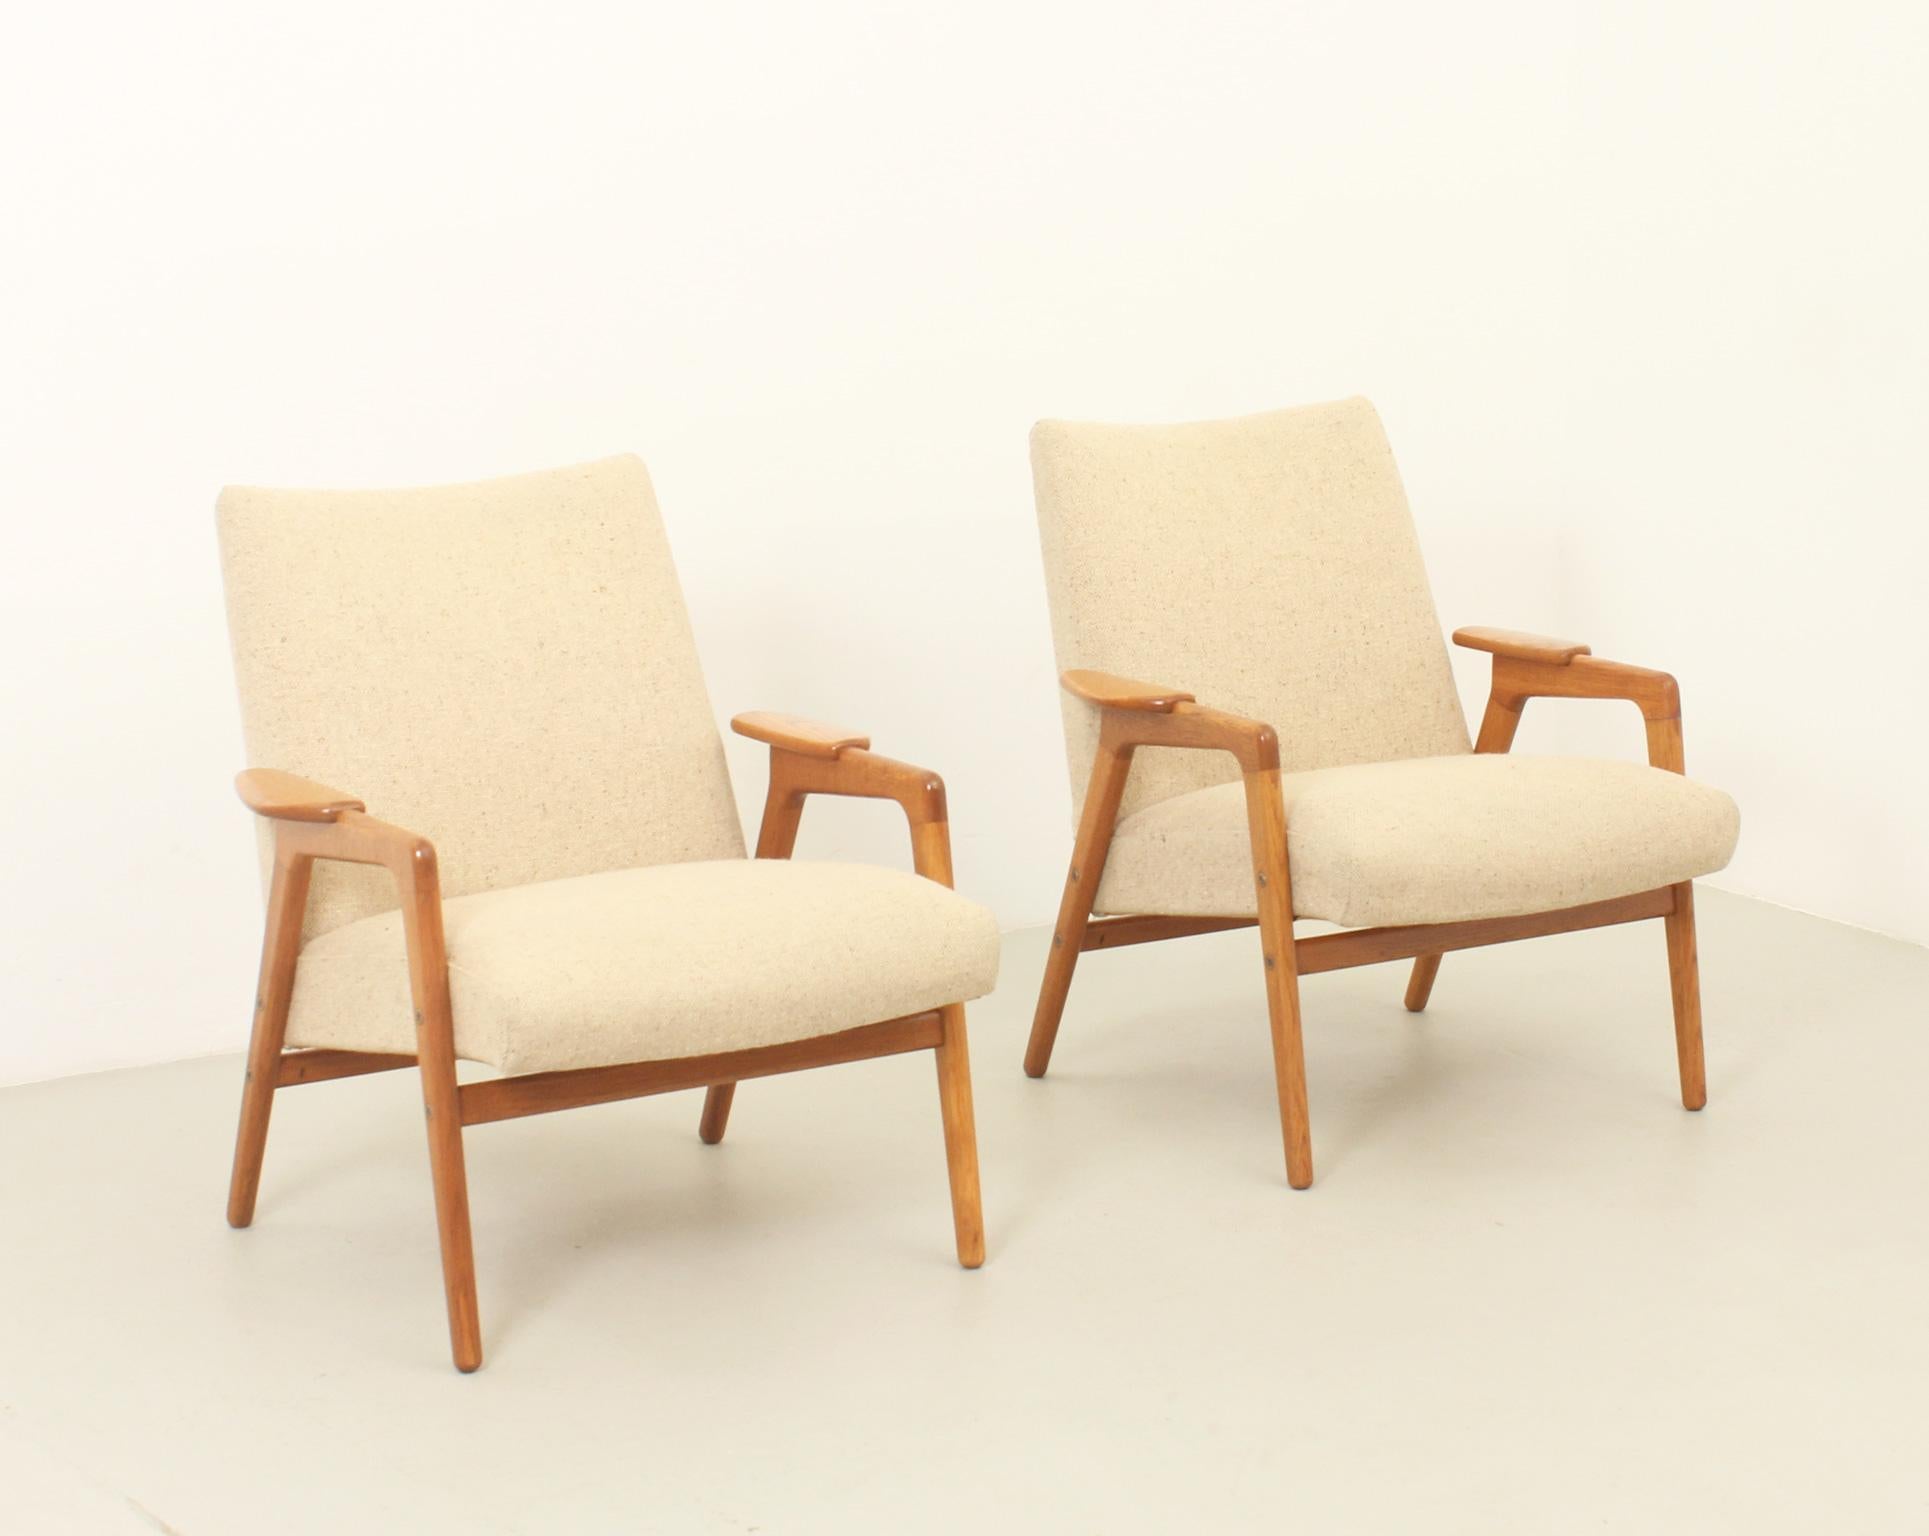 Ein Paar Ruster-Sessel, entworfen vom schwedischen Designer Yngve Ekström und hergestellt von der niederländischen Firma Pastoe in den Niederlanden, 1960er Jahre. Struktur aus massivem Eichenholz und Originalpolsterung mit Wollstoff. 